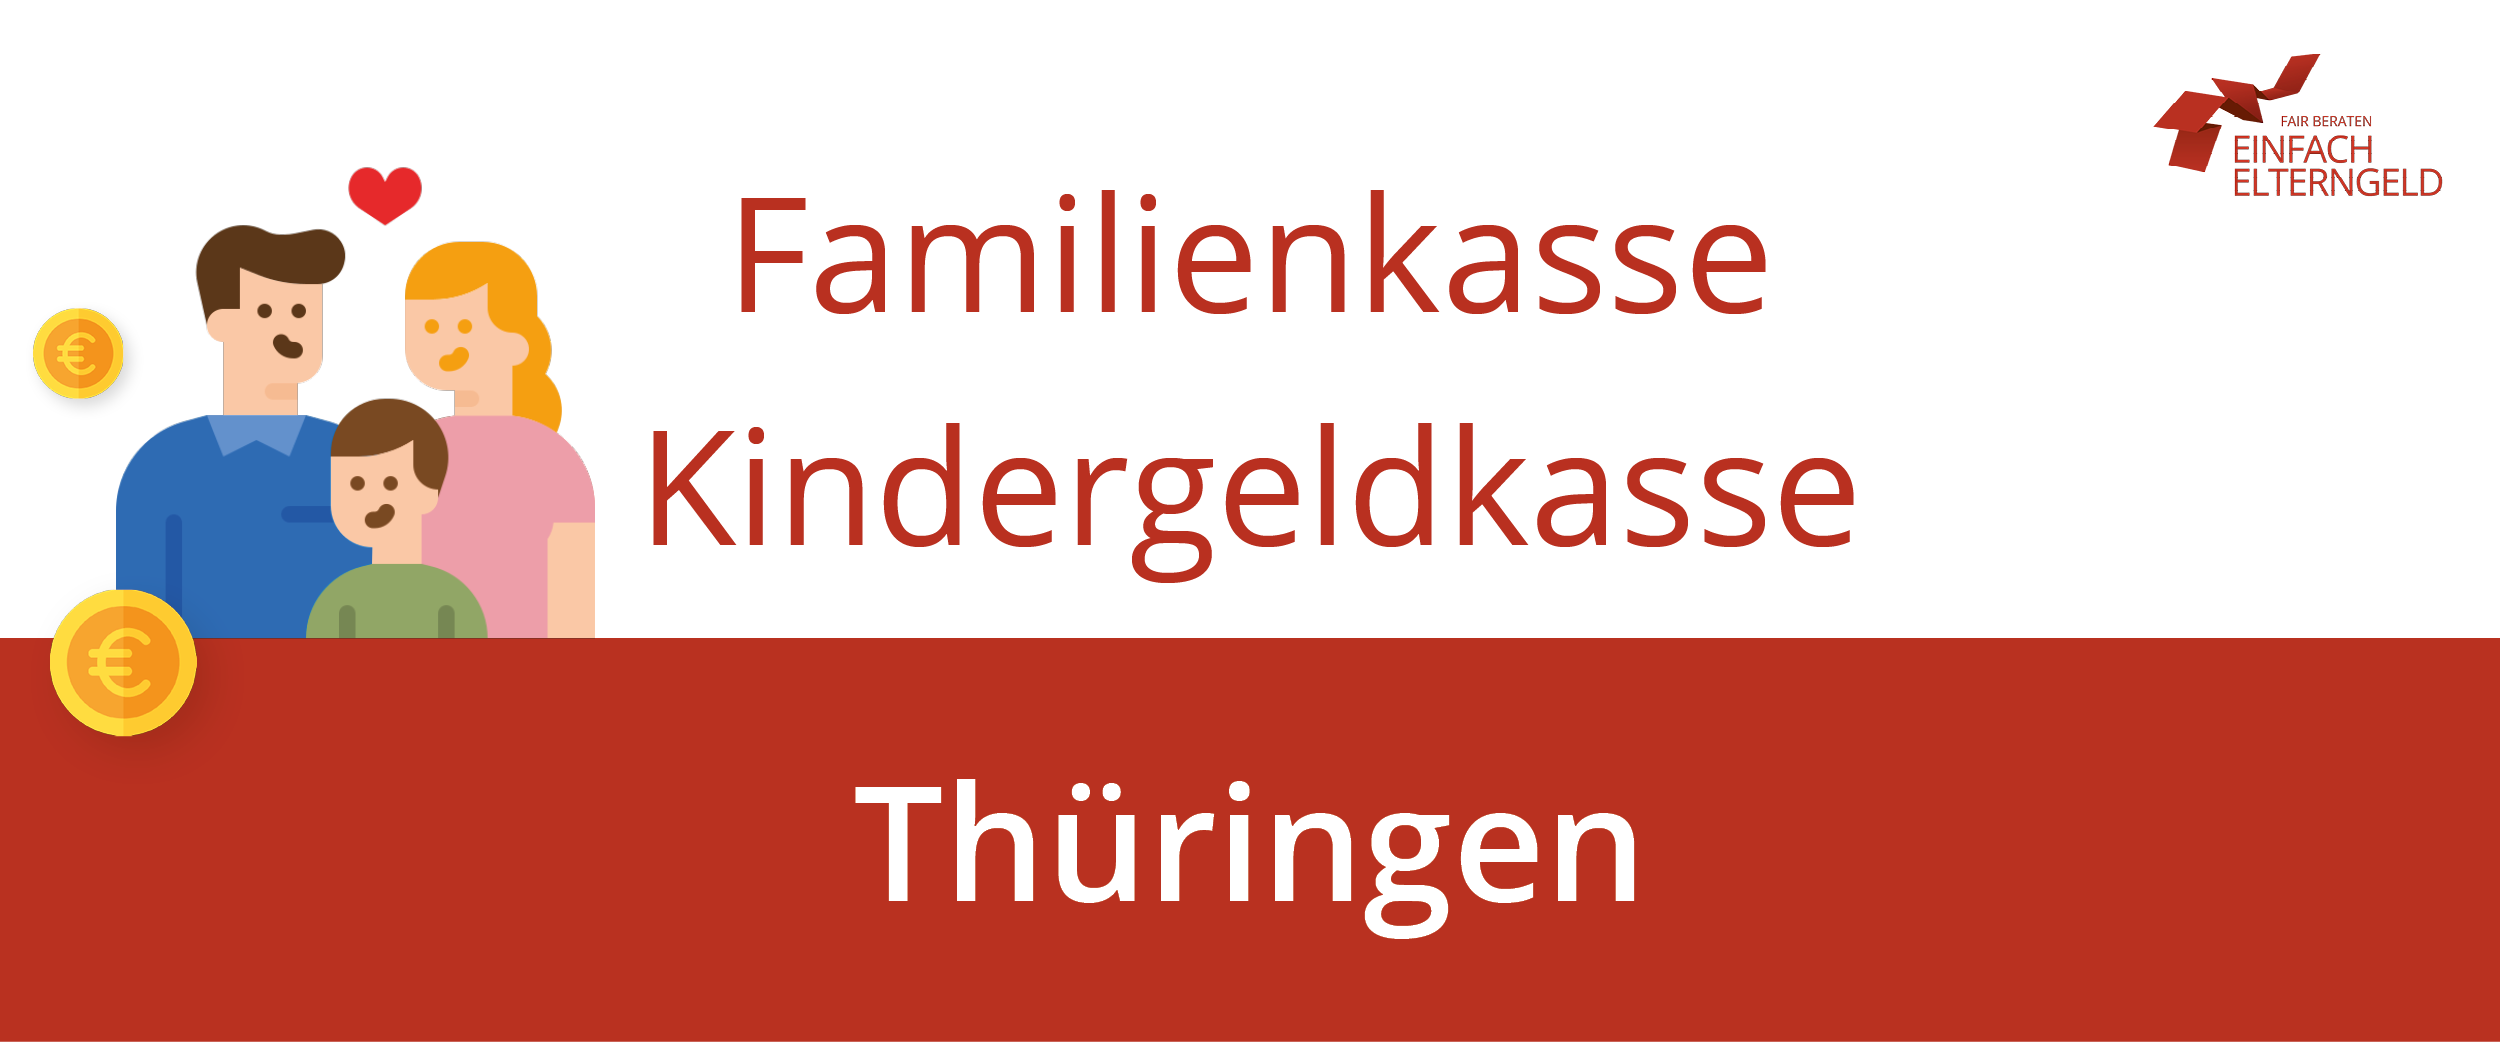 Familienkasse Kindergeldkasse Thüringen - Wir stellen Ihnen alle Familienkassen in Thüringen vor.